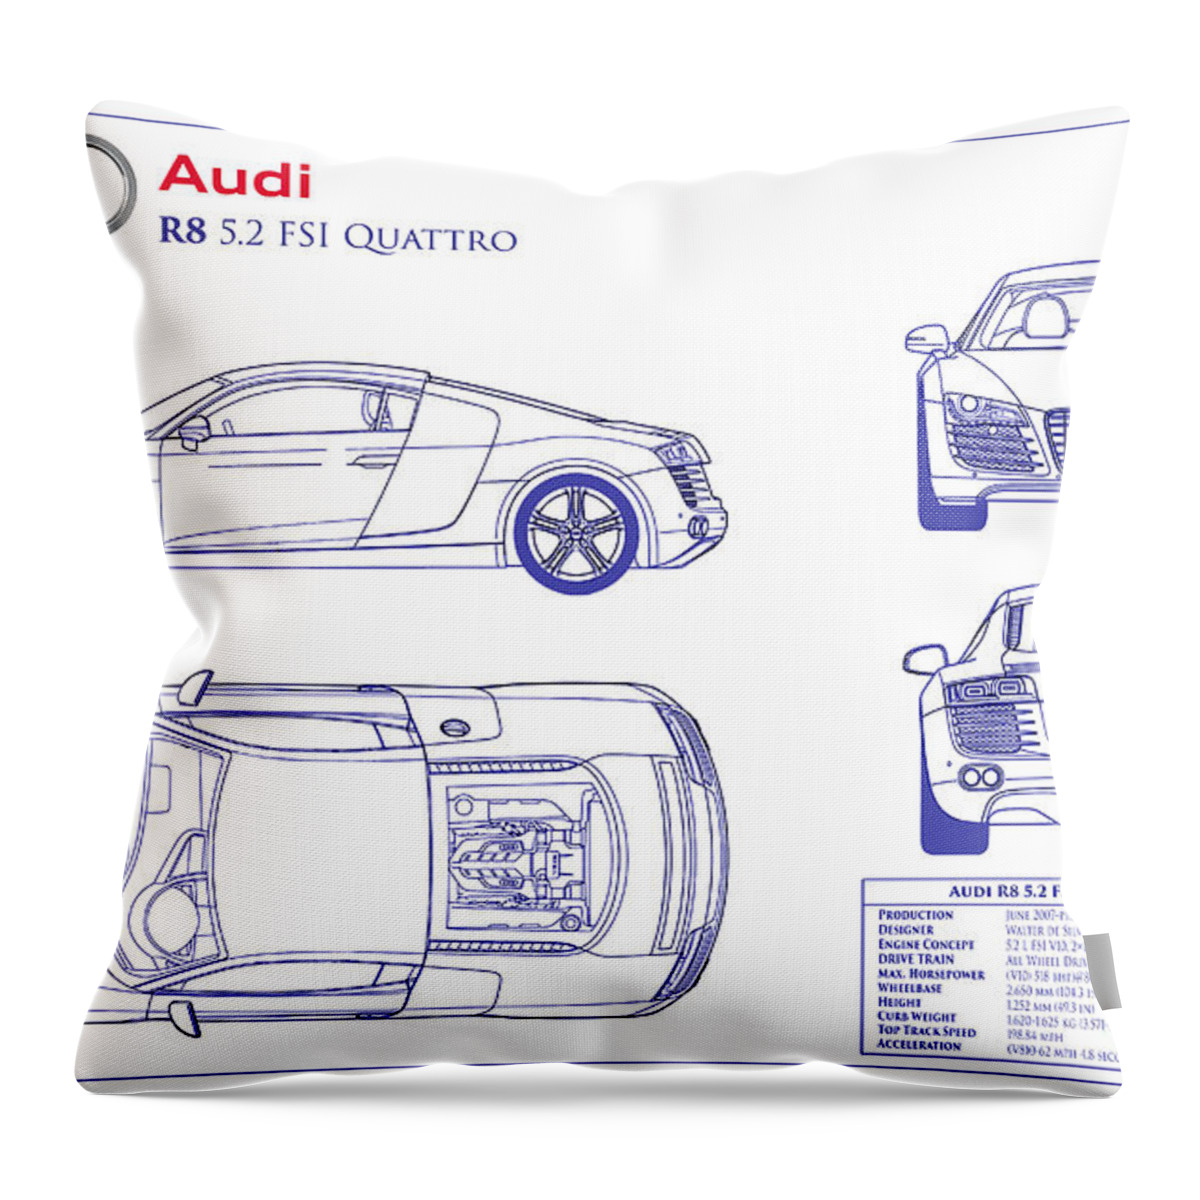 Audi R8 Blueprint Throw Pillow featuring the photograph Audi R8 Blueprint by Jon Neidert